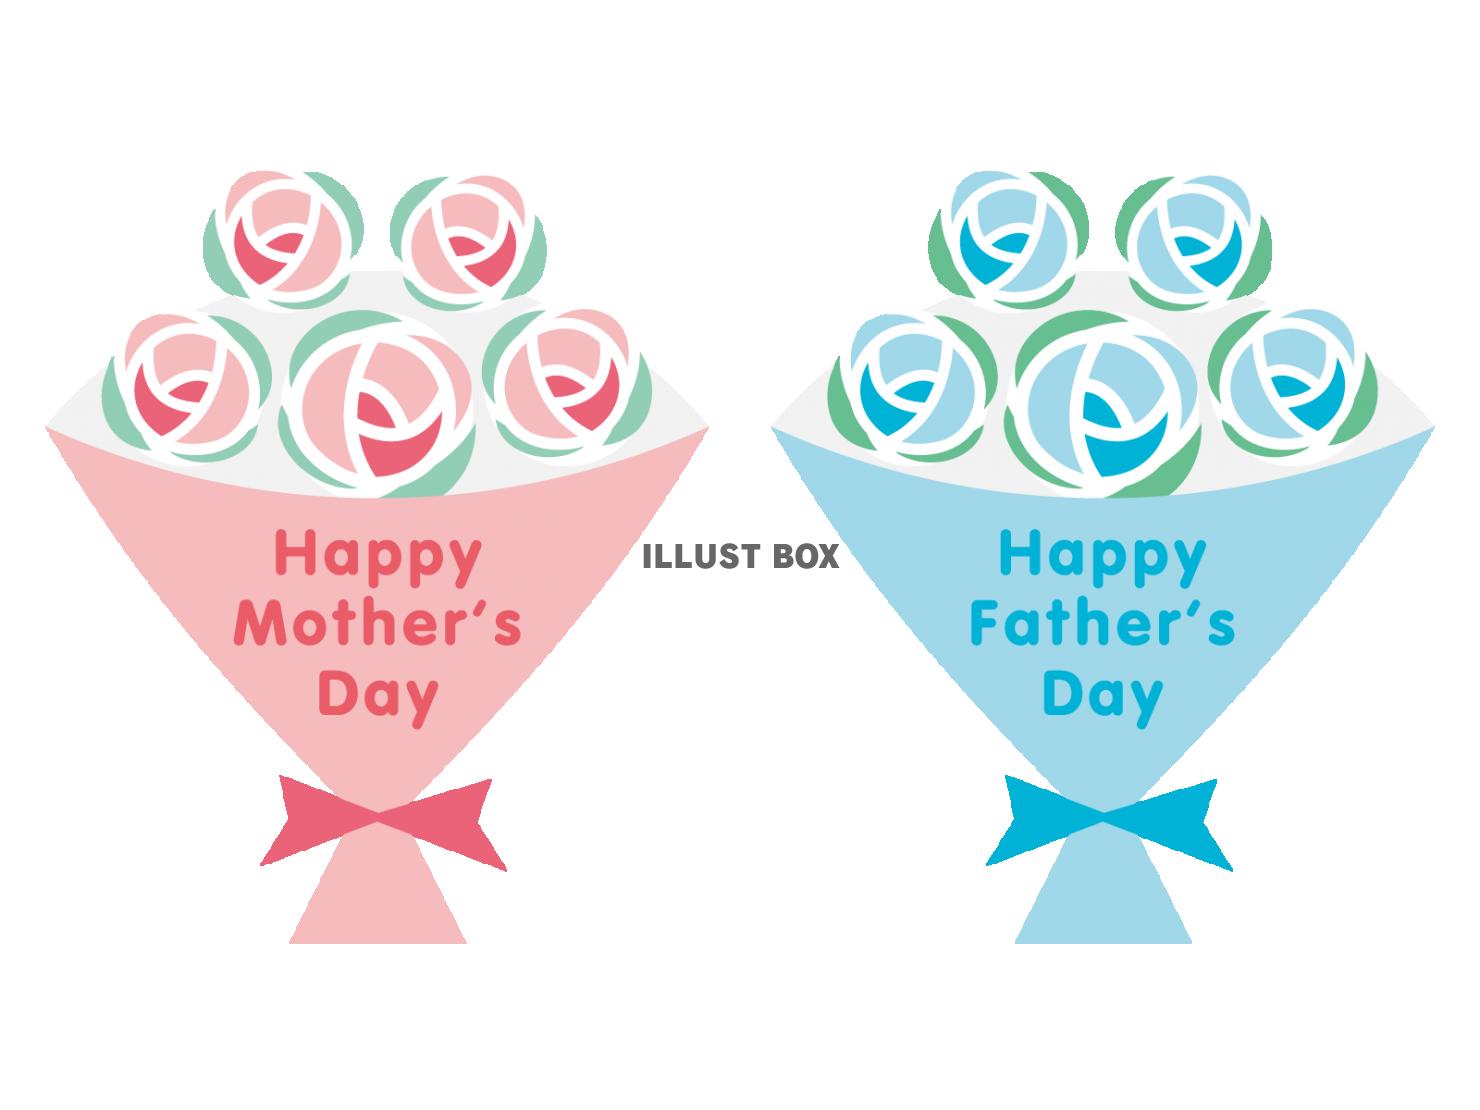 「母の日」と「父の日」の文字入りブーケのイラストセット